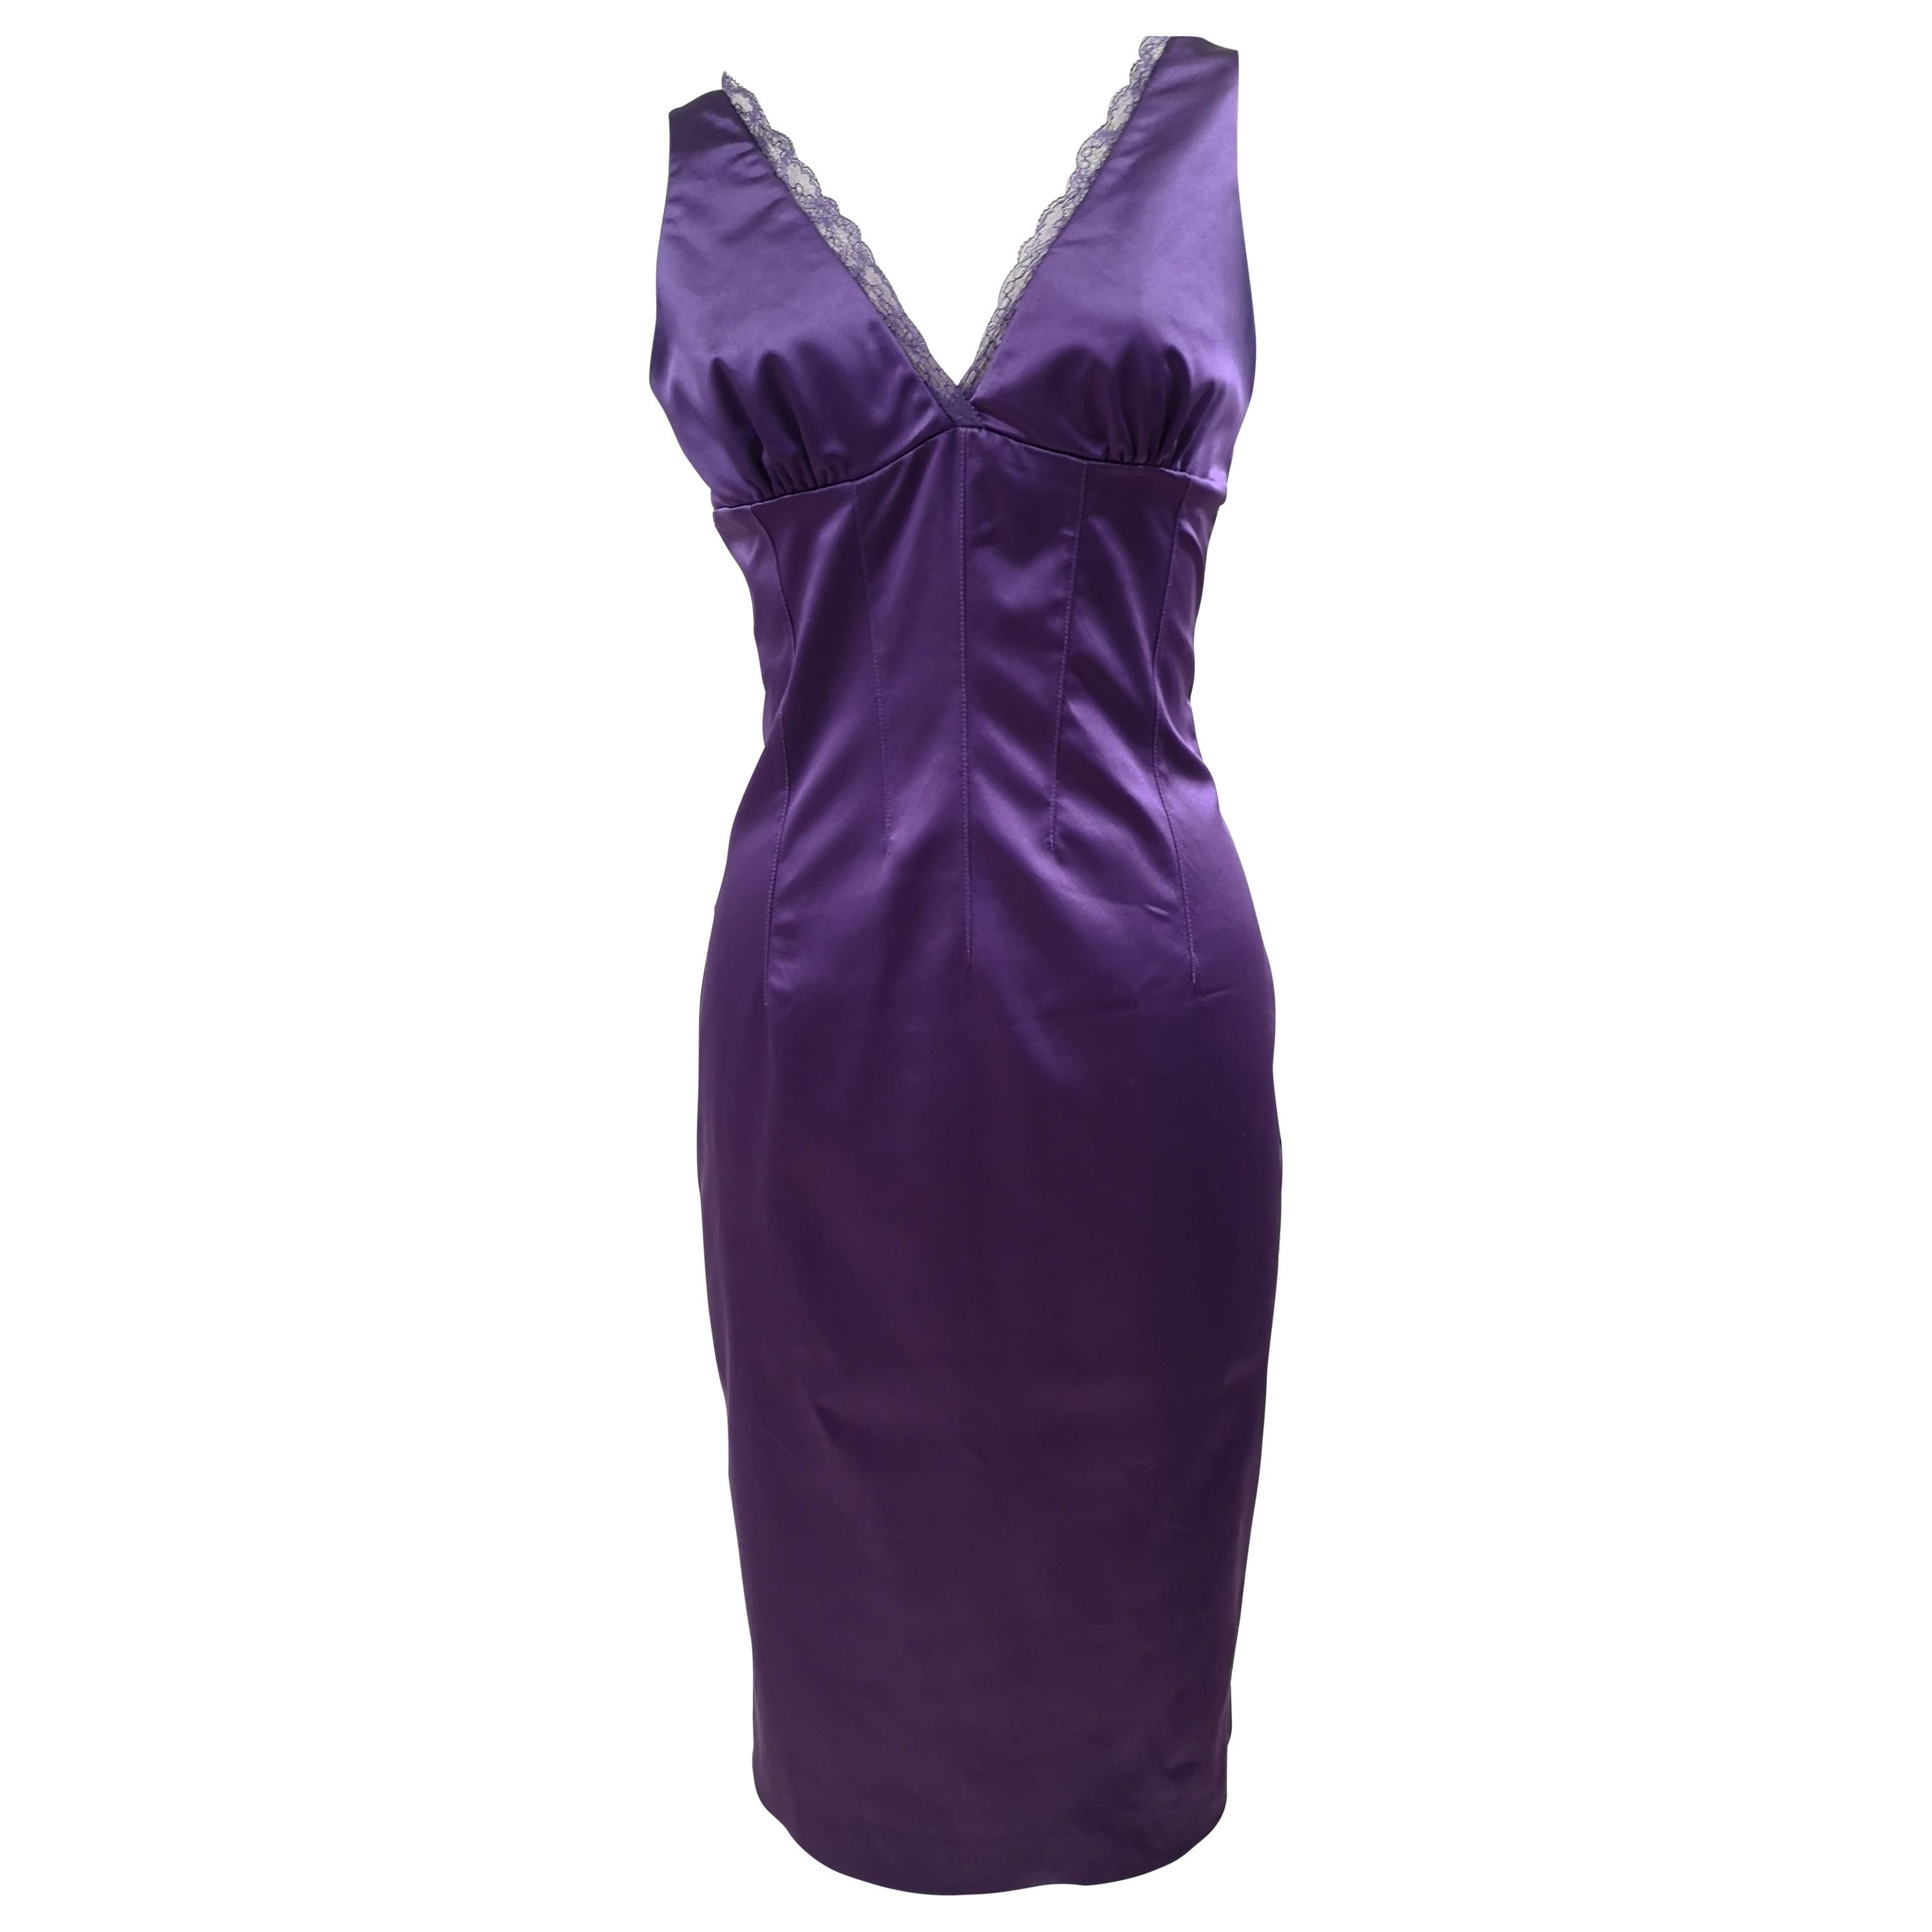 Dolce & Gabbana purple dress